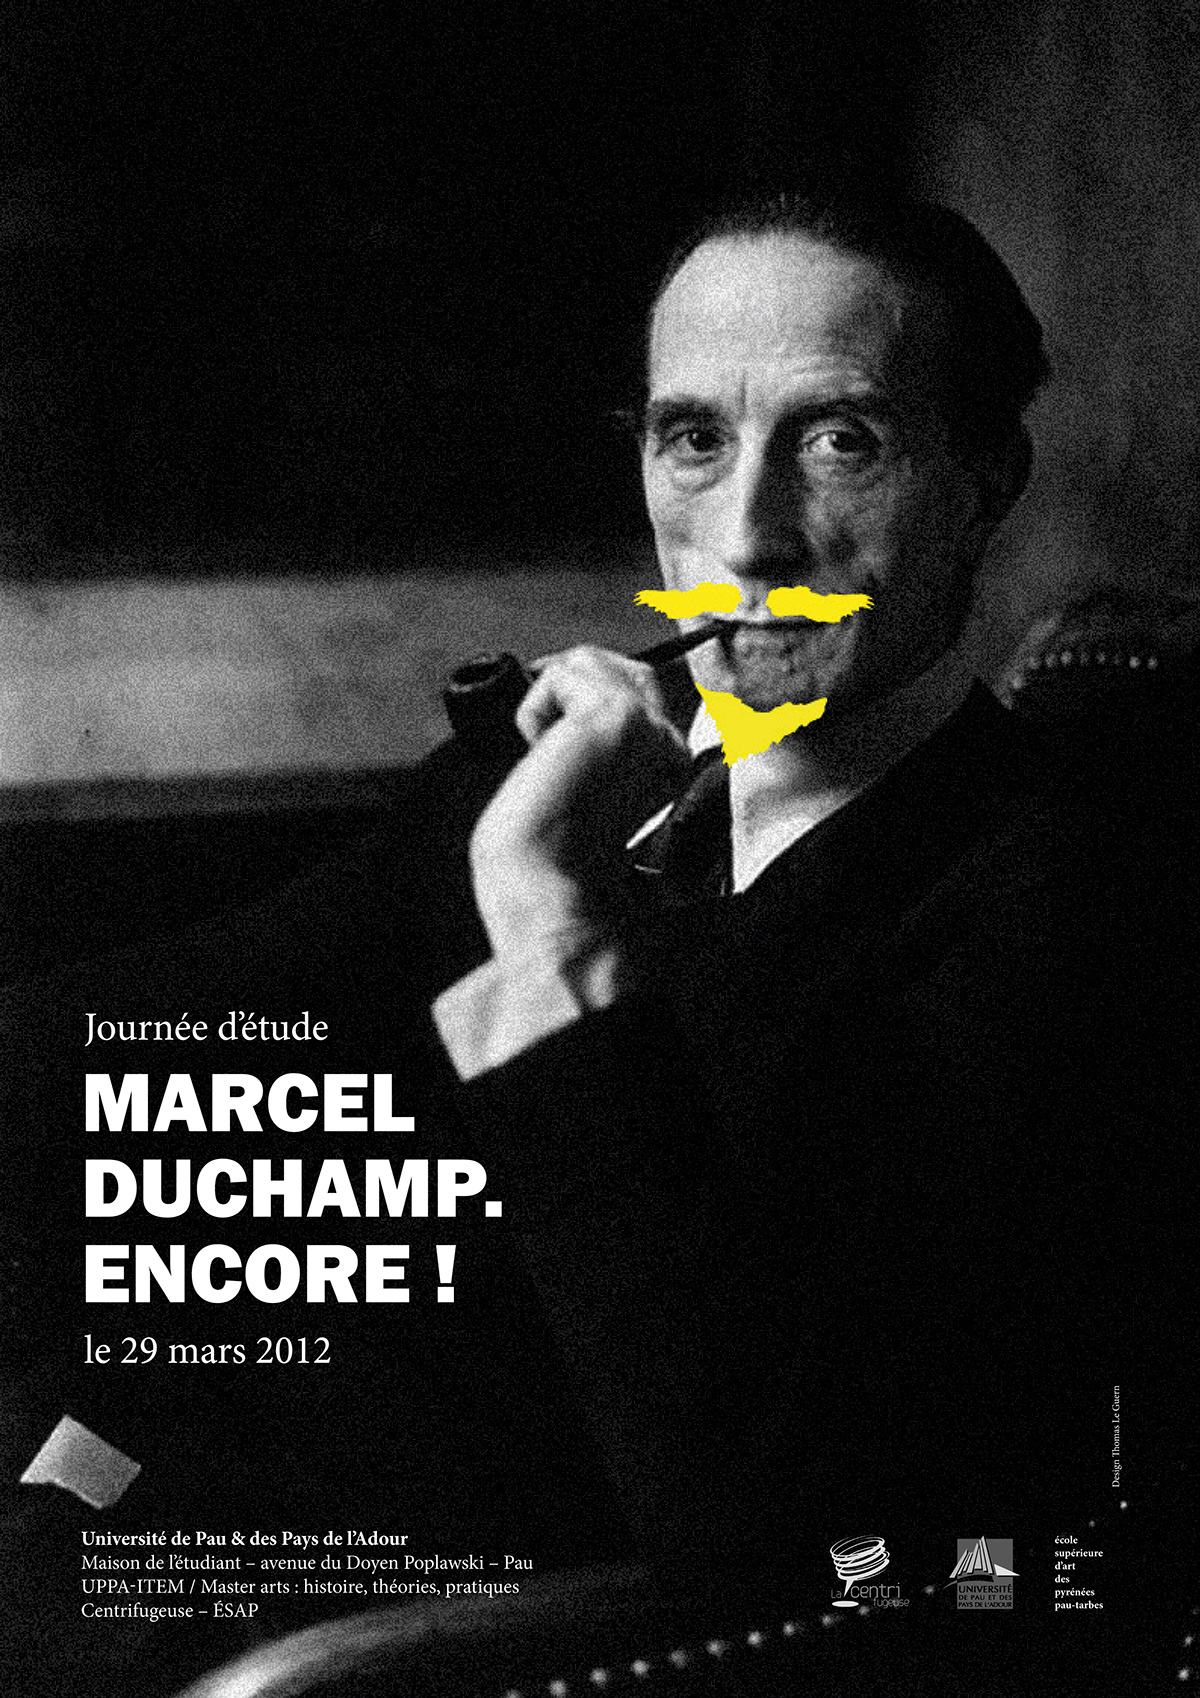 Marcel duchamp graphic poster affiche